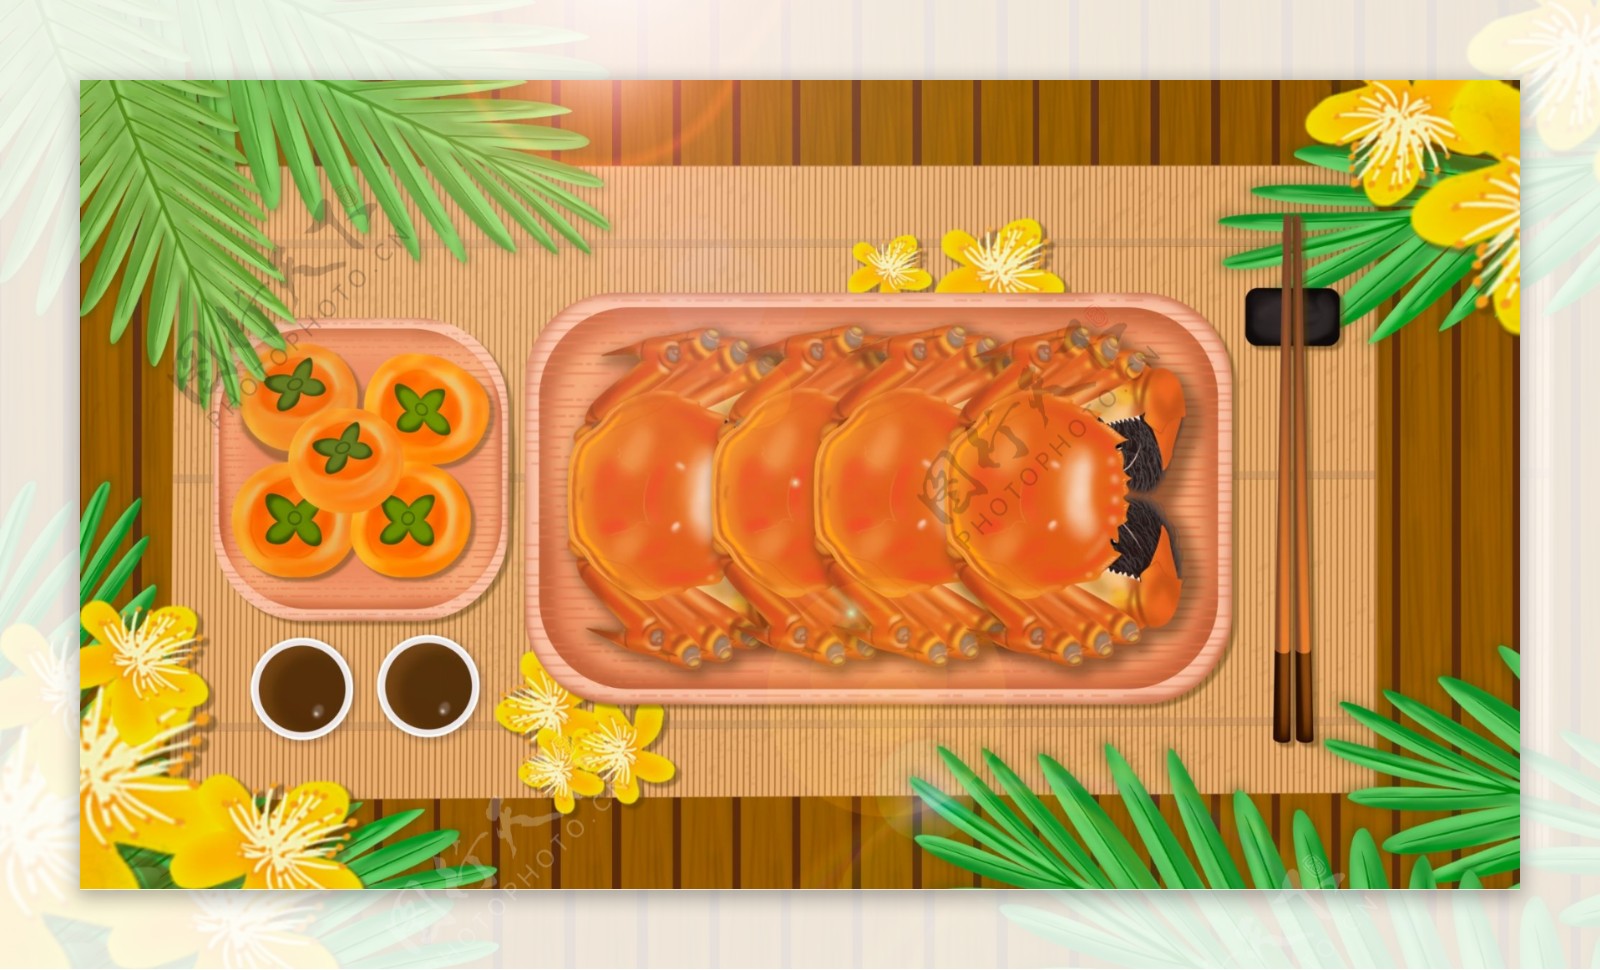 原创细腻写实大闸蟹与柿子美食插画